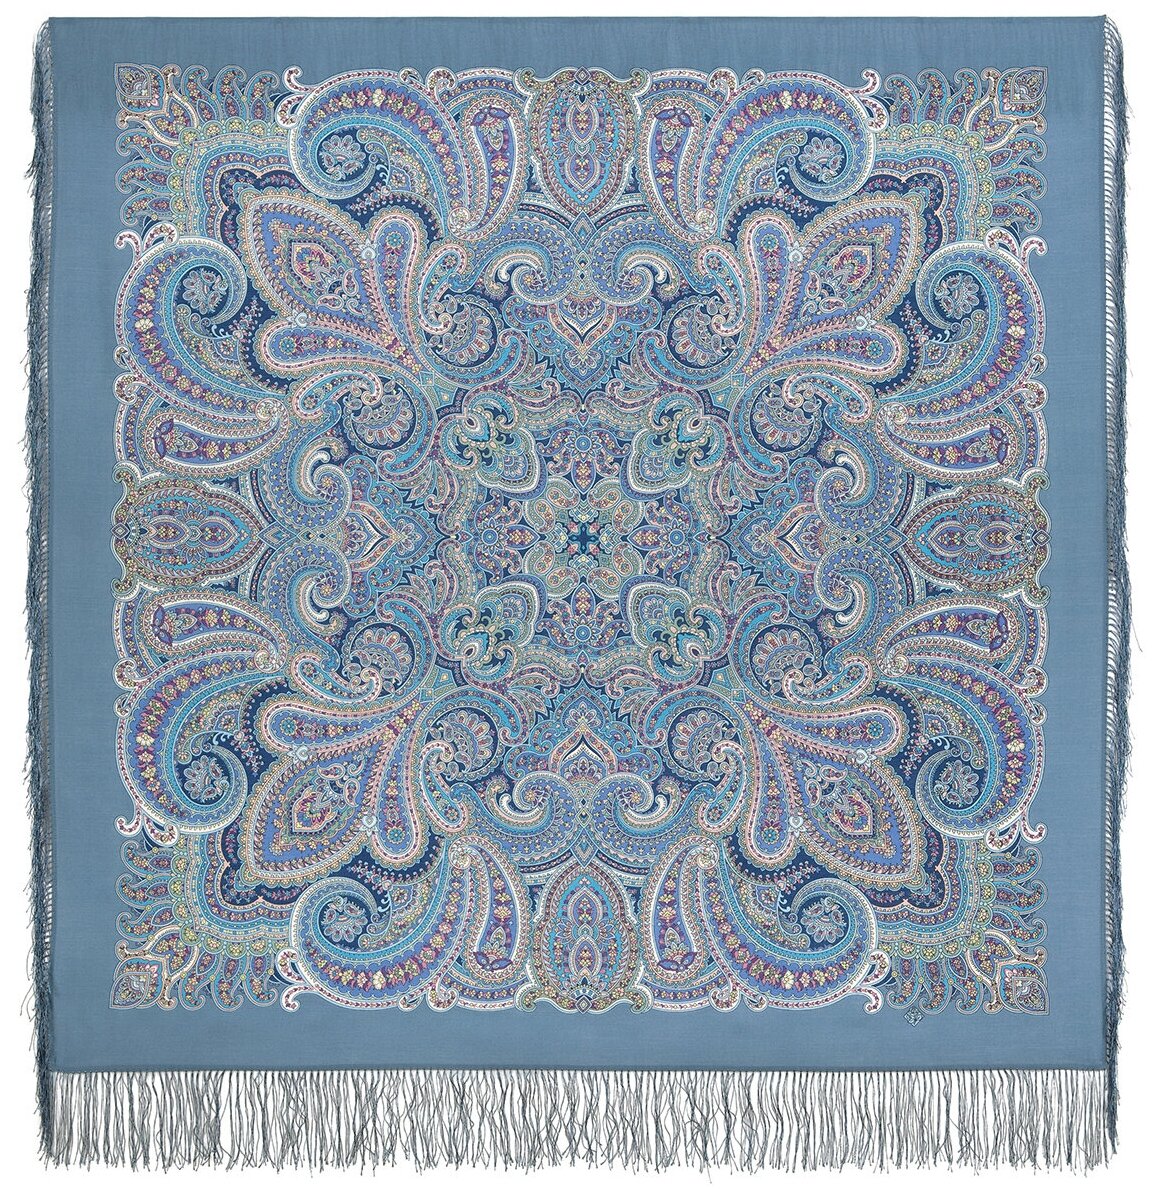 Павловопосадский шерстяной платок с шелковой бахромой, 1895 в ожидании праздника, вид 13, голубой